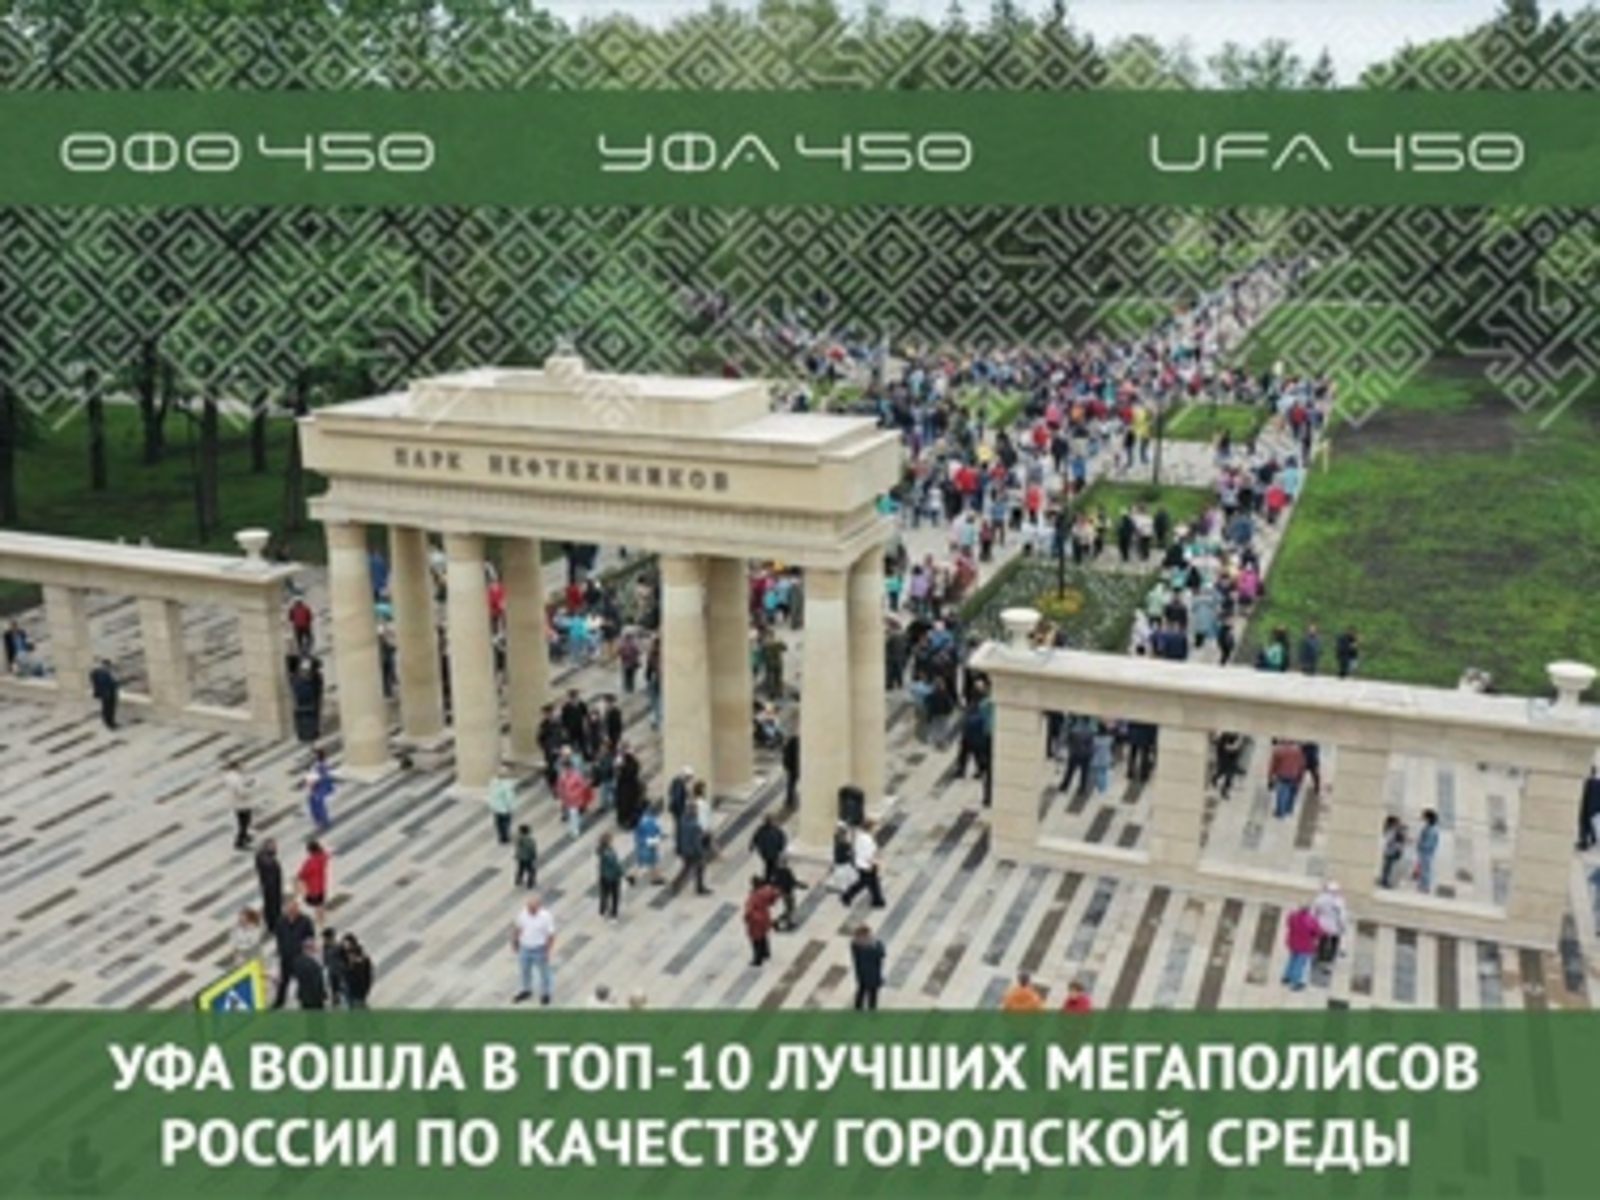 Уфа вошла в топ-10 лучших мегаполисов России по качеству городской среды